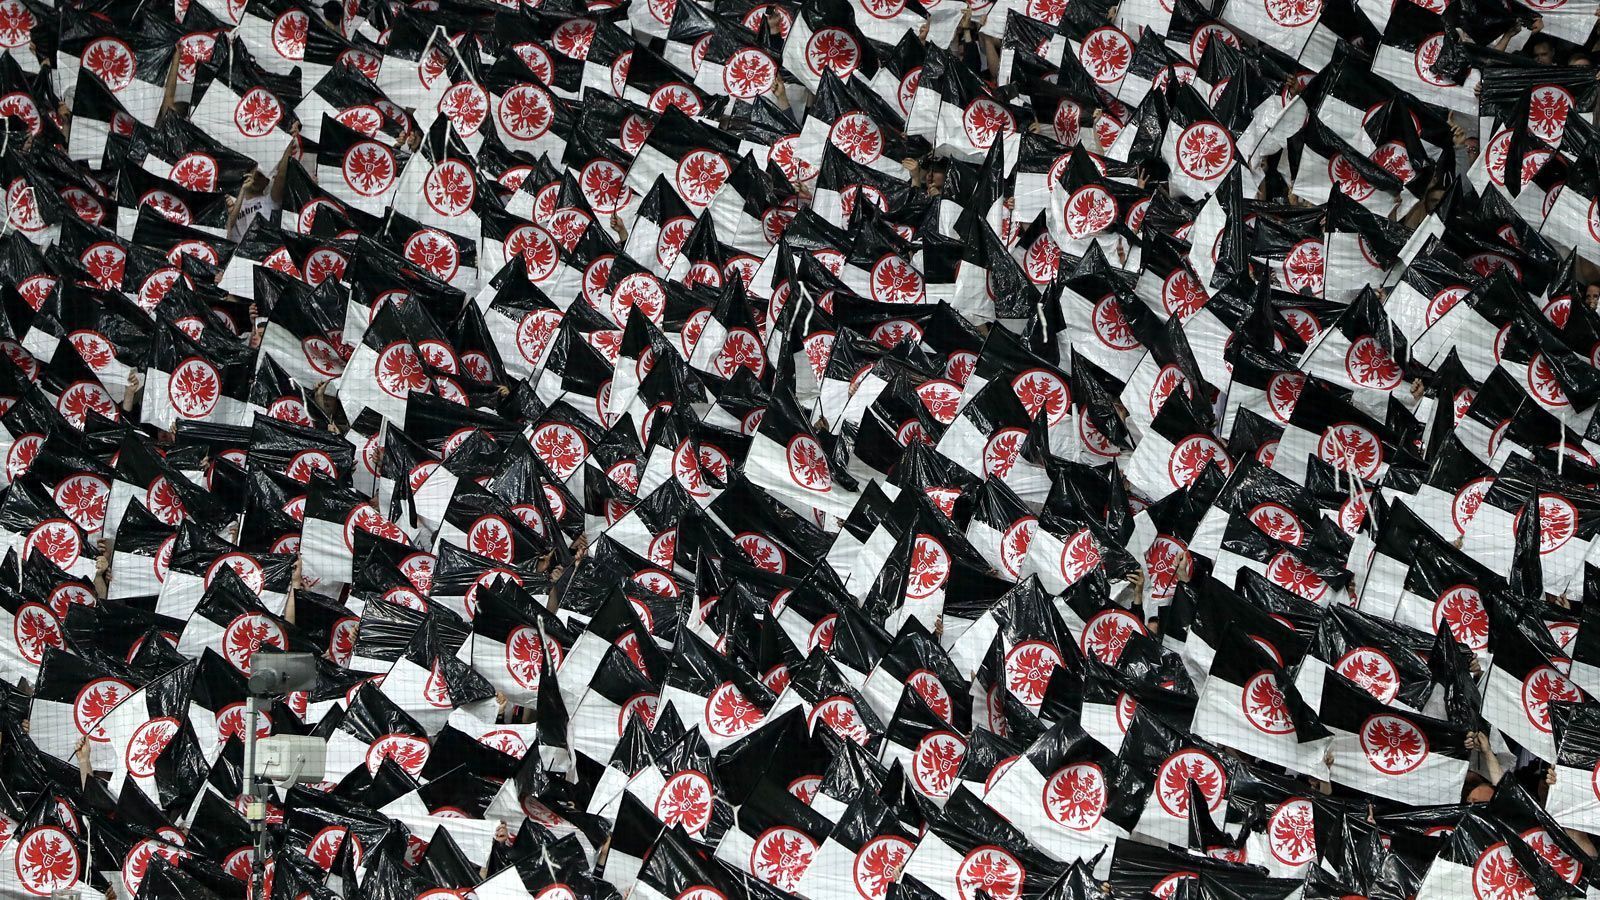 
                <strong>Gänsehaut-Choreo vor Anpfiff</strong><br>
                Der Verein verteilte an das Publikum schwarz-weiße Flaggen mit Eintracht-Logo. Das sorgte für eine beeindruckende Kulisse. 
              